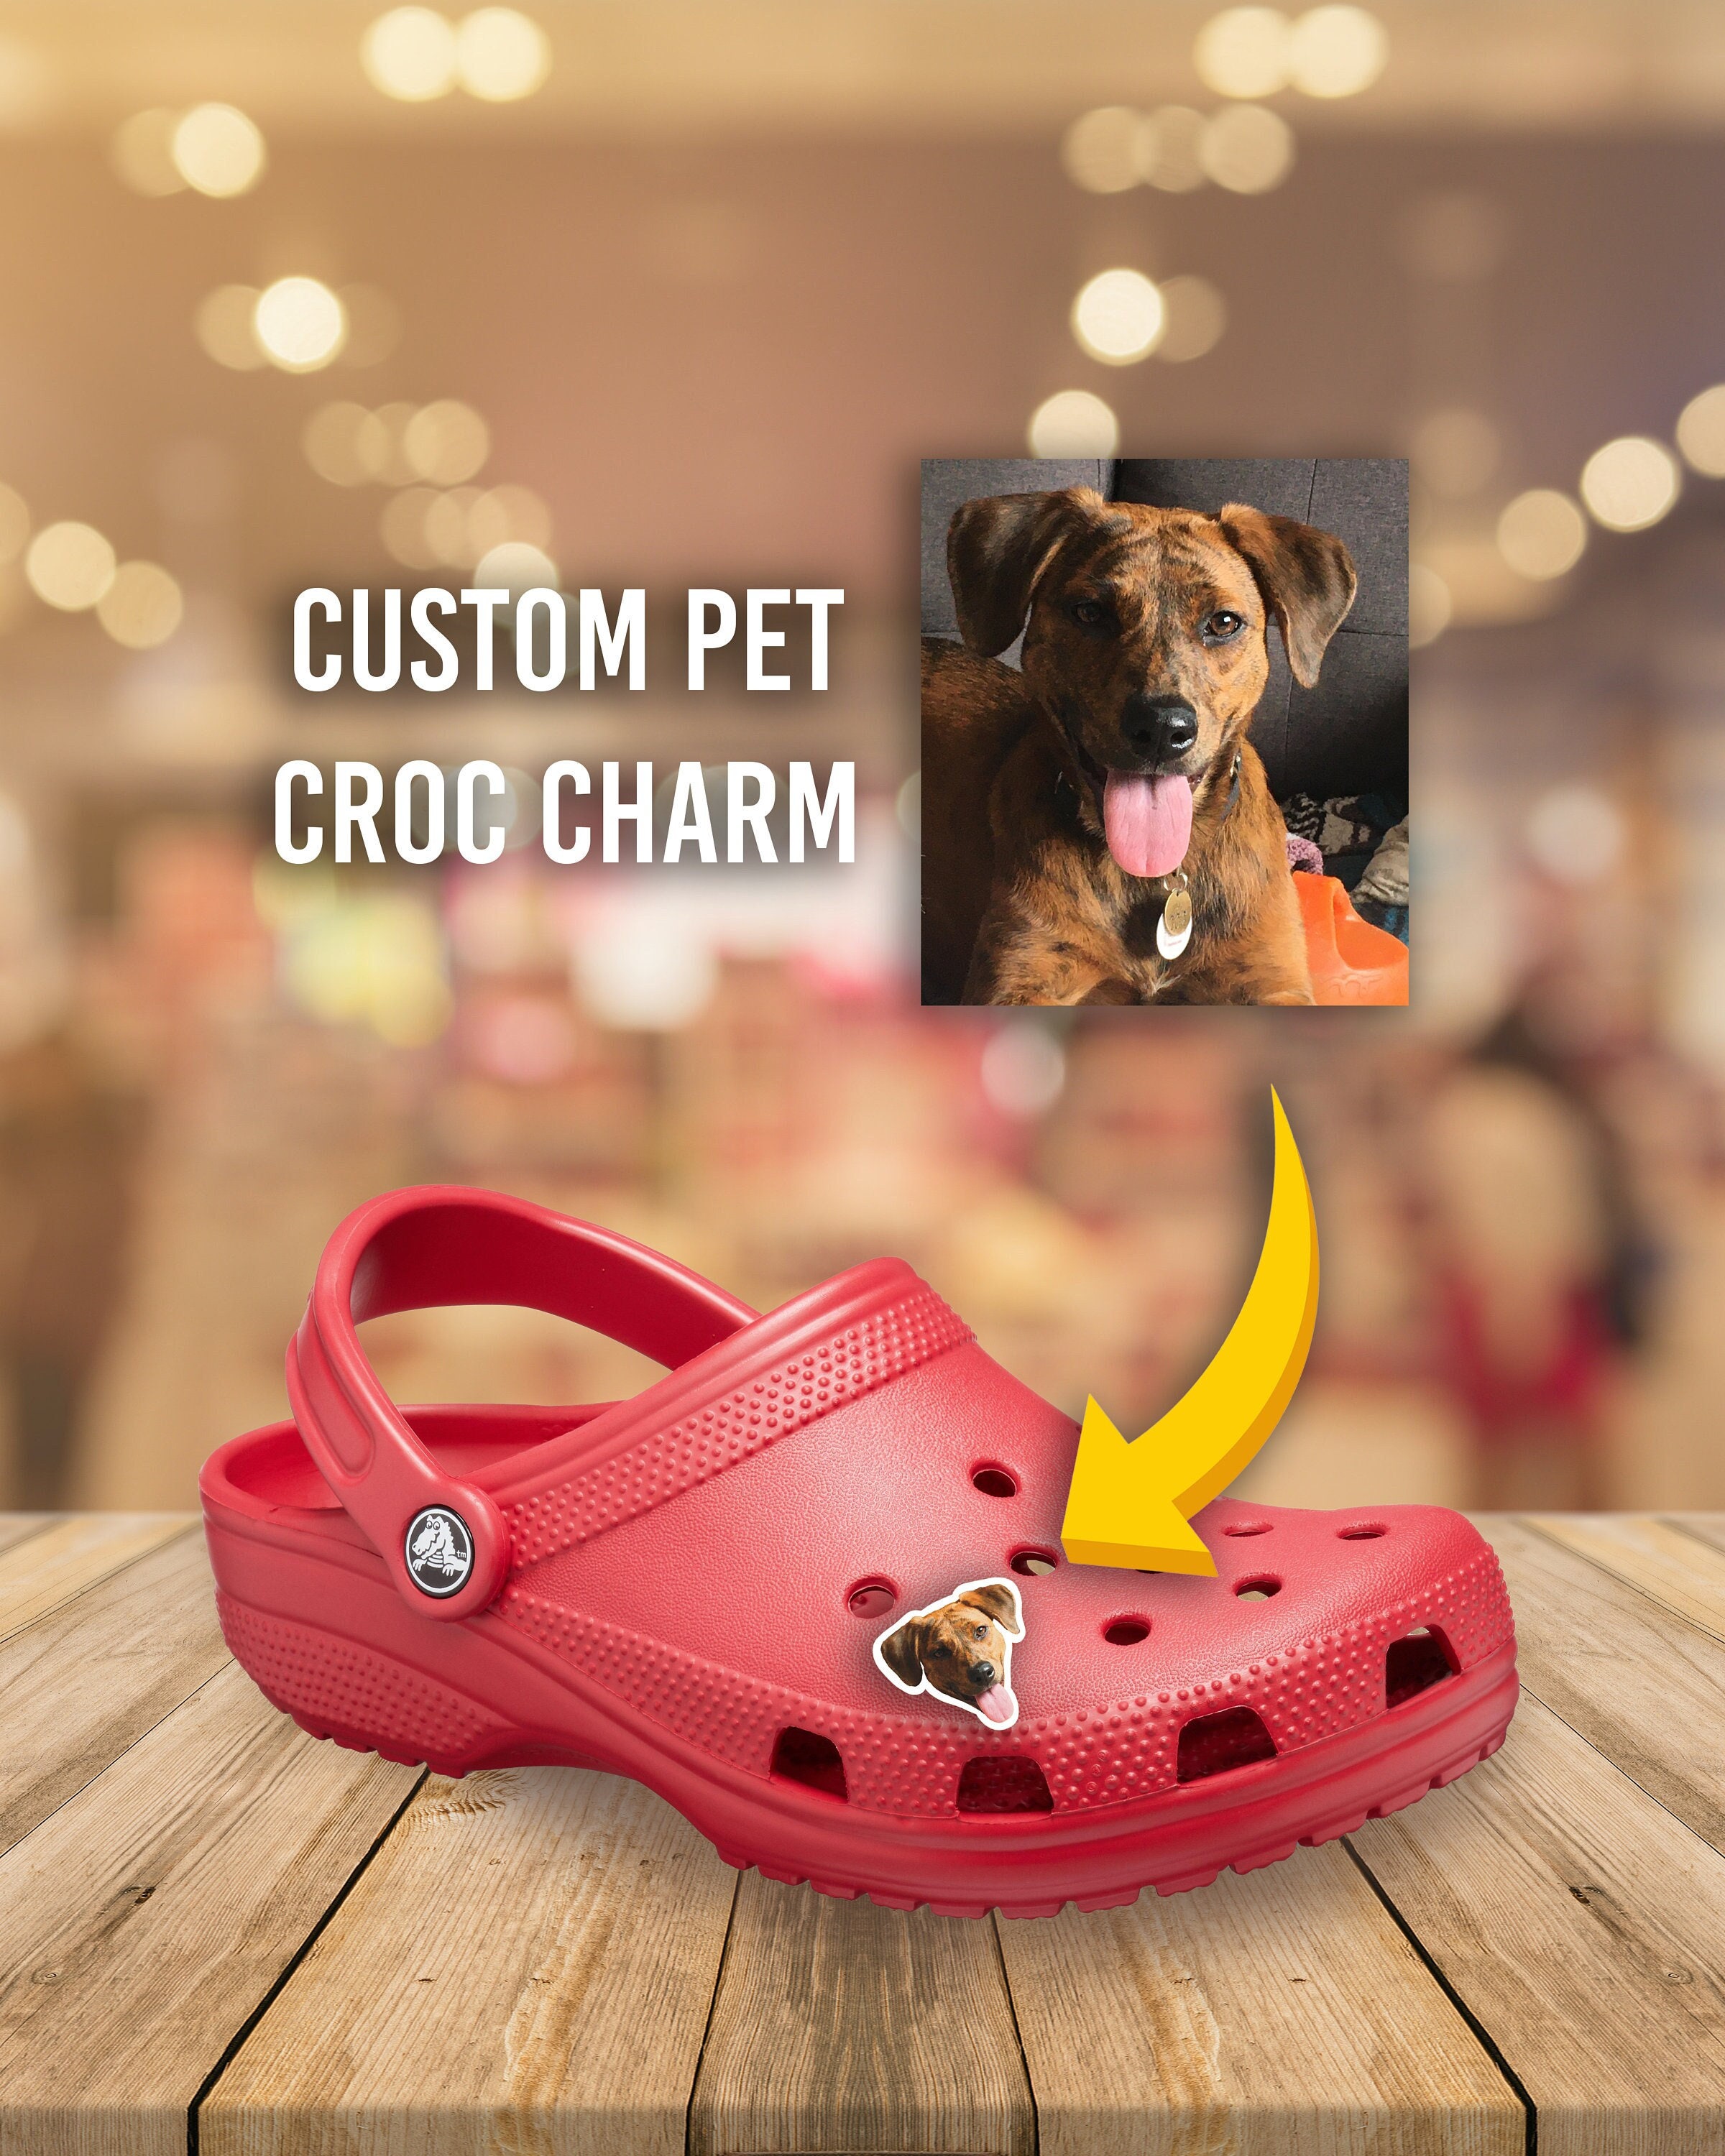 Custom Portrait/Picture Croc Charms